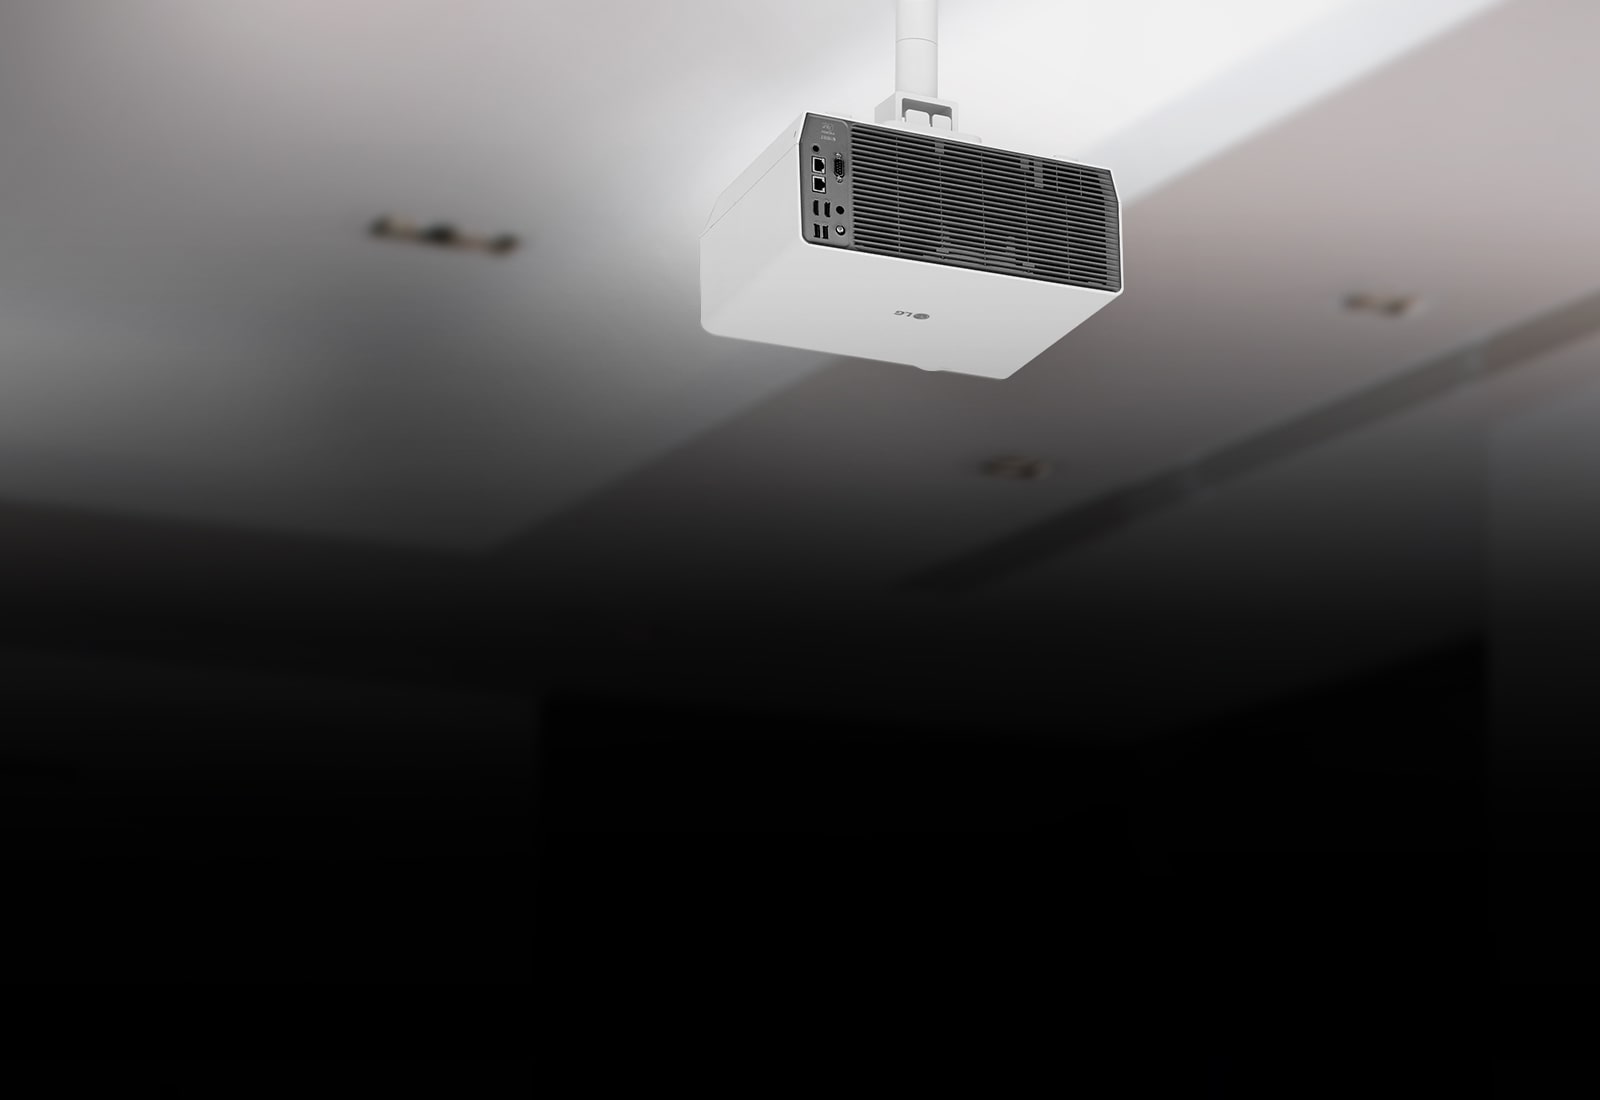 Le modèle BU60 est installé au plafond, et les caractéristiques sont montrées en points vignettes.